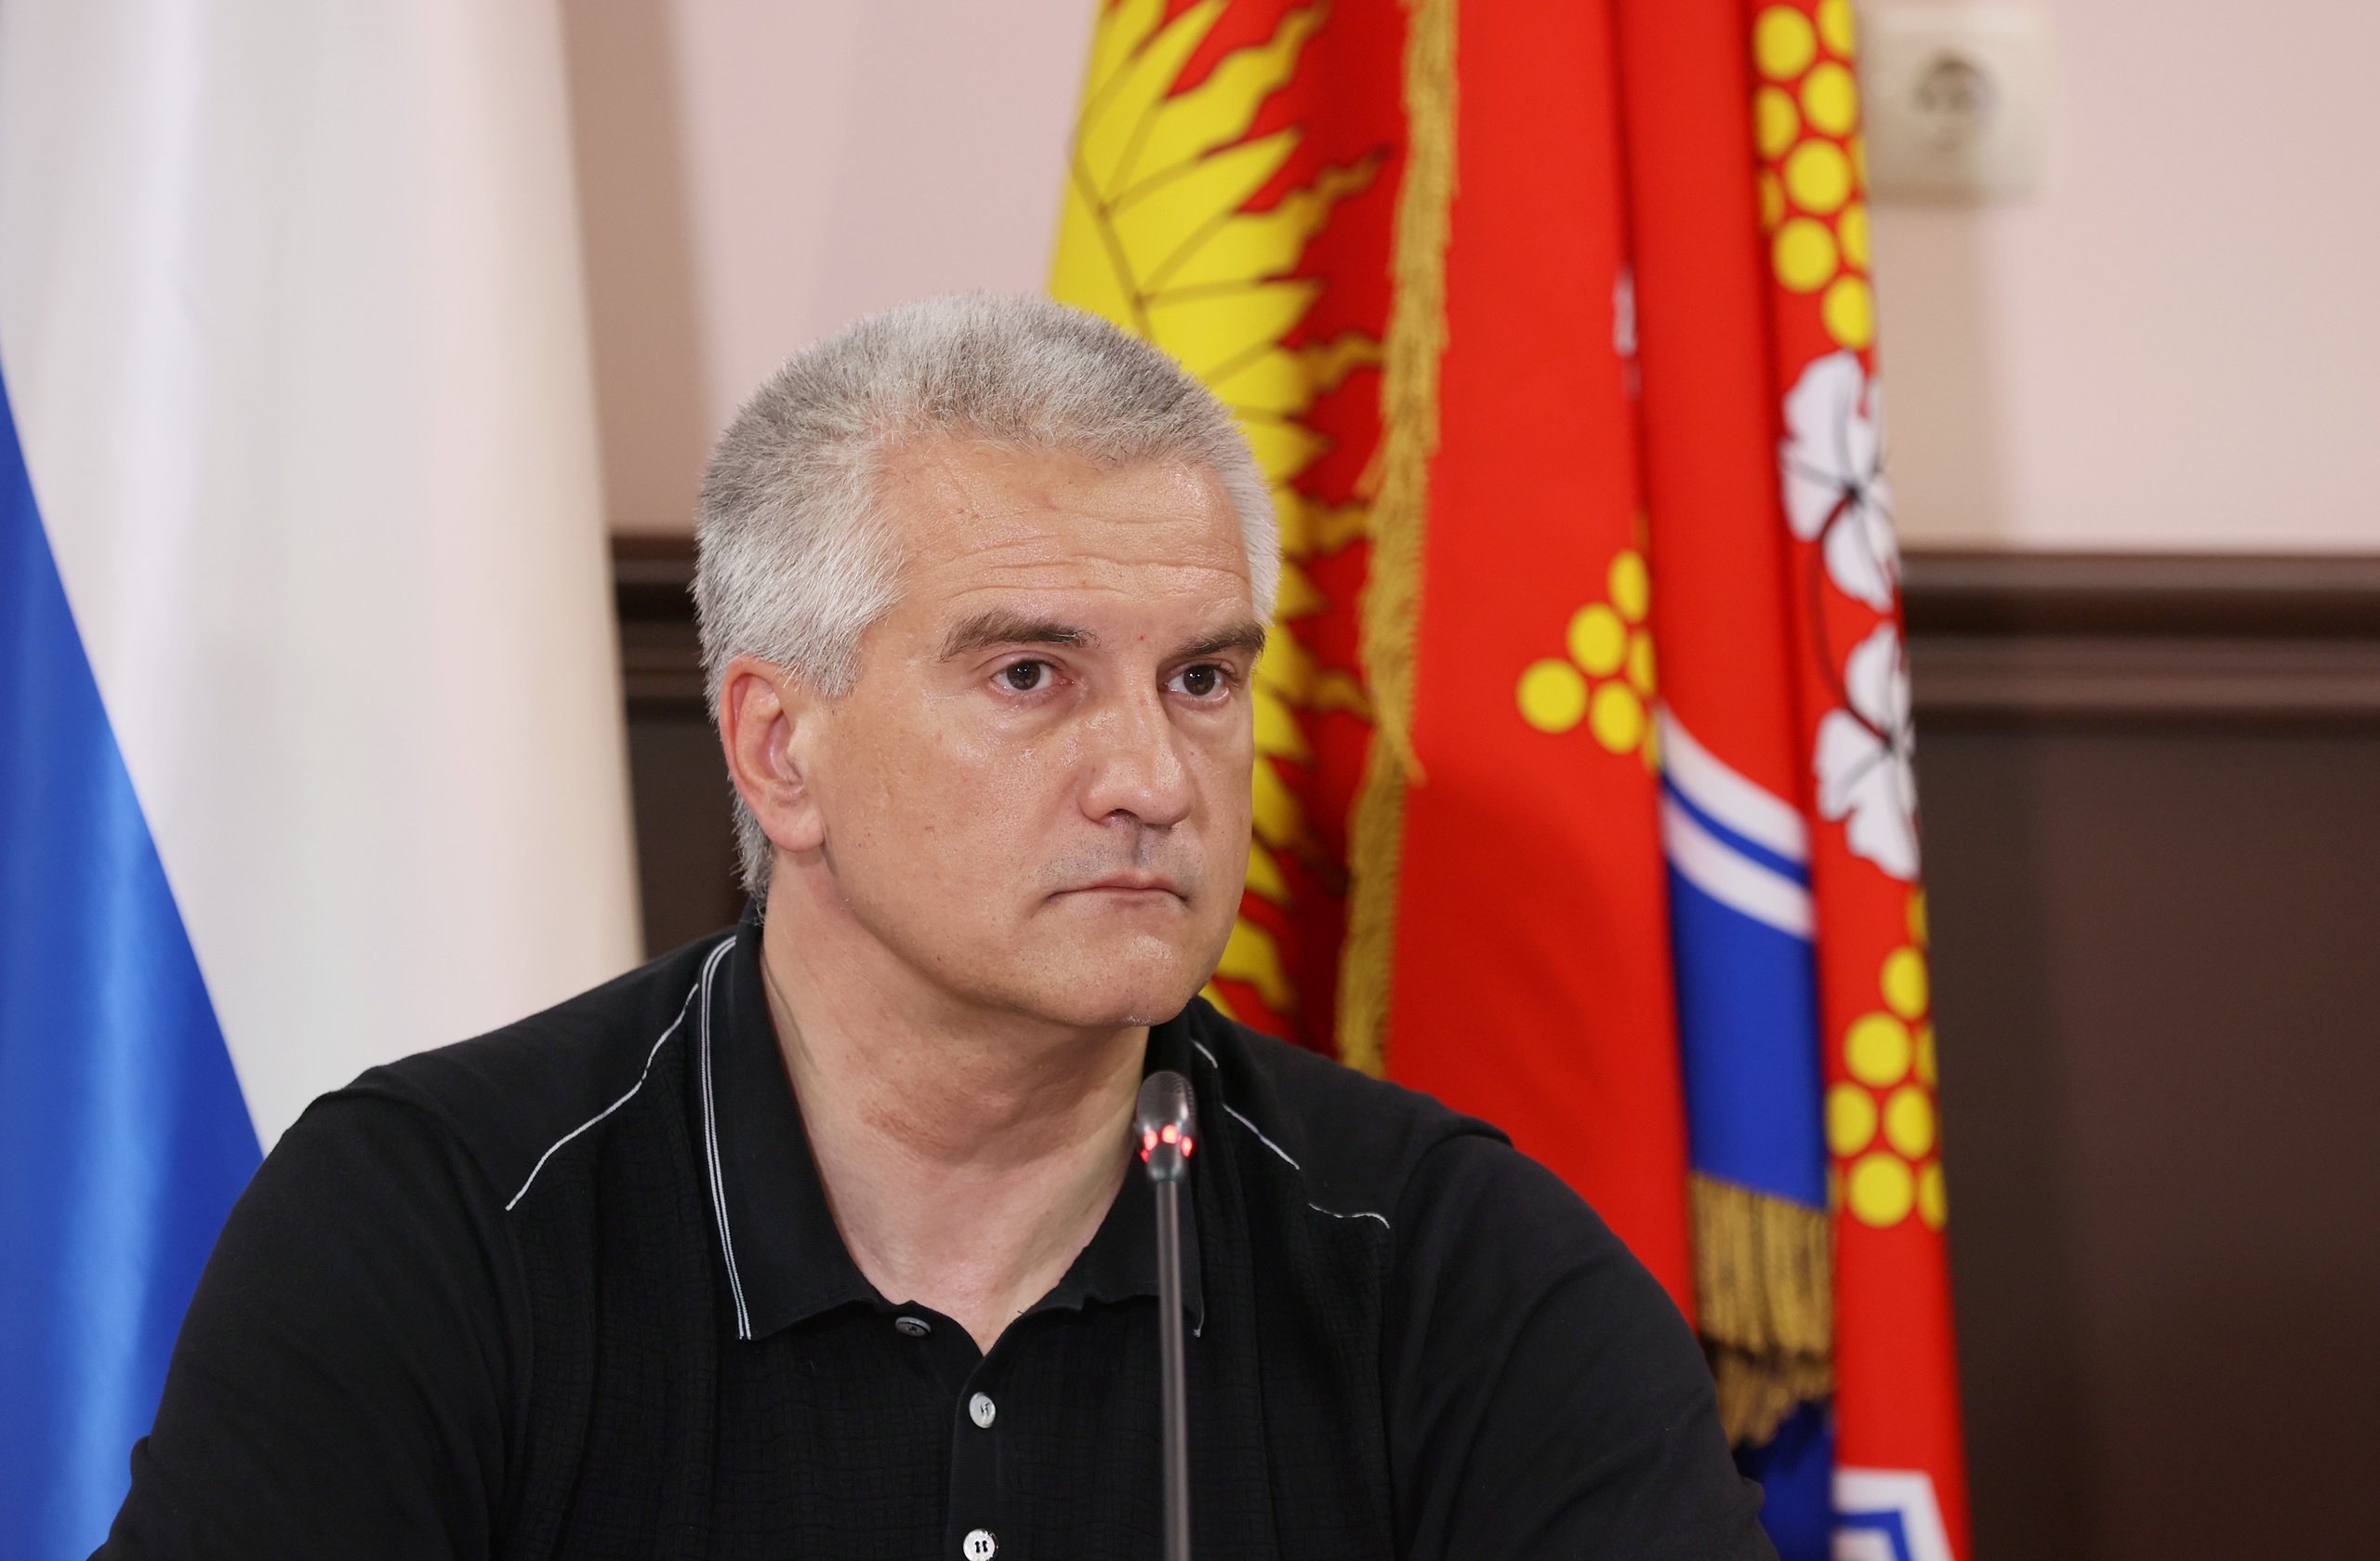 Аксенов прокомментировал информацию о конфликте в Судаке